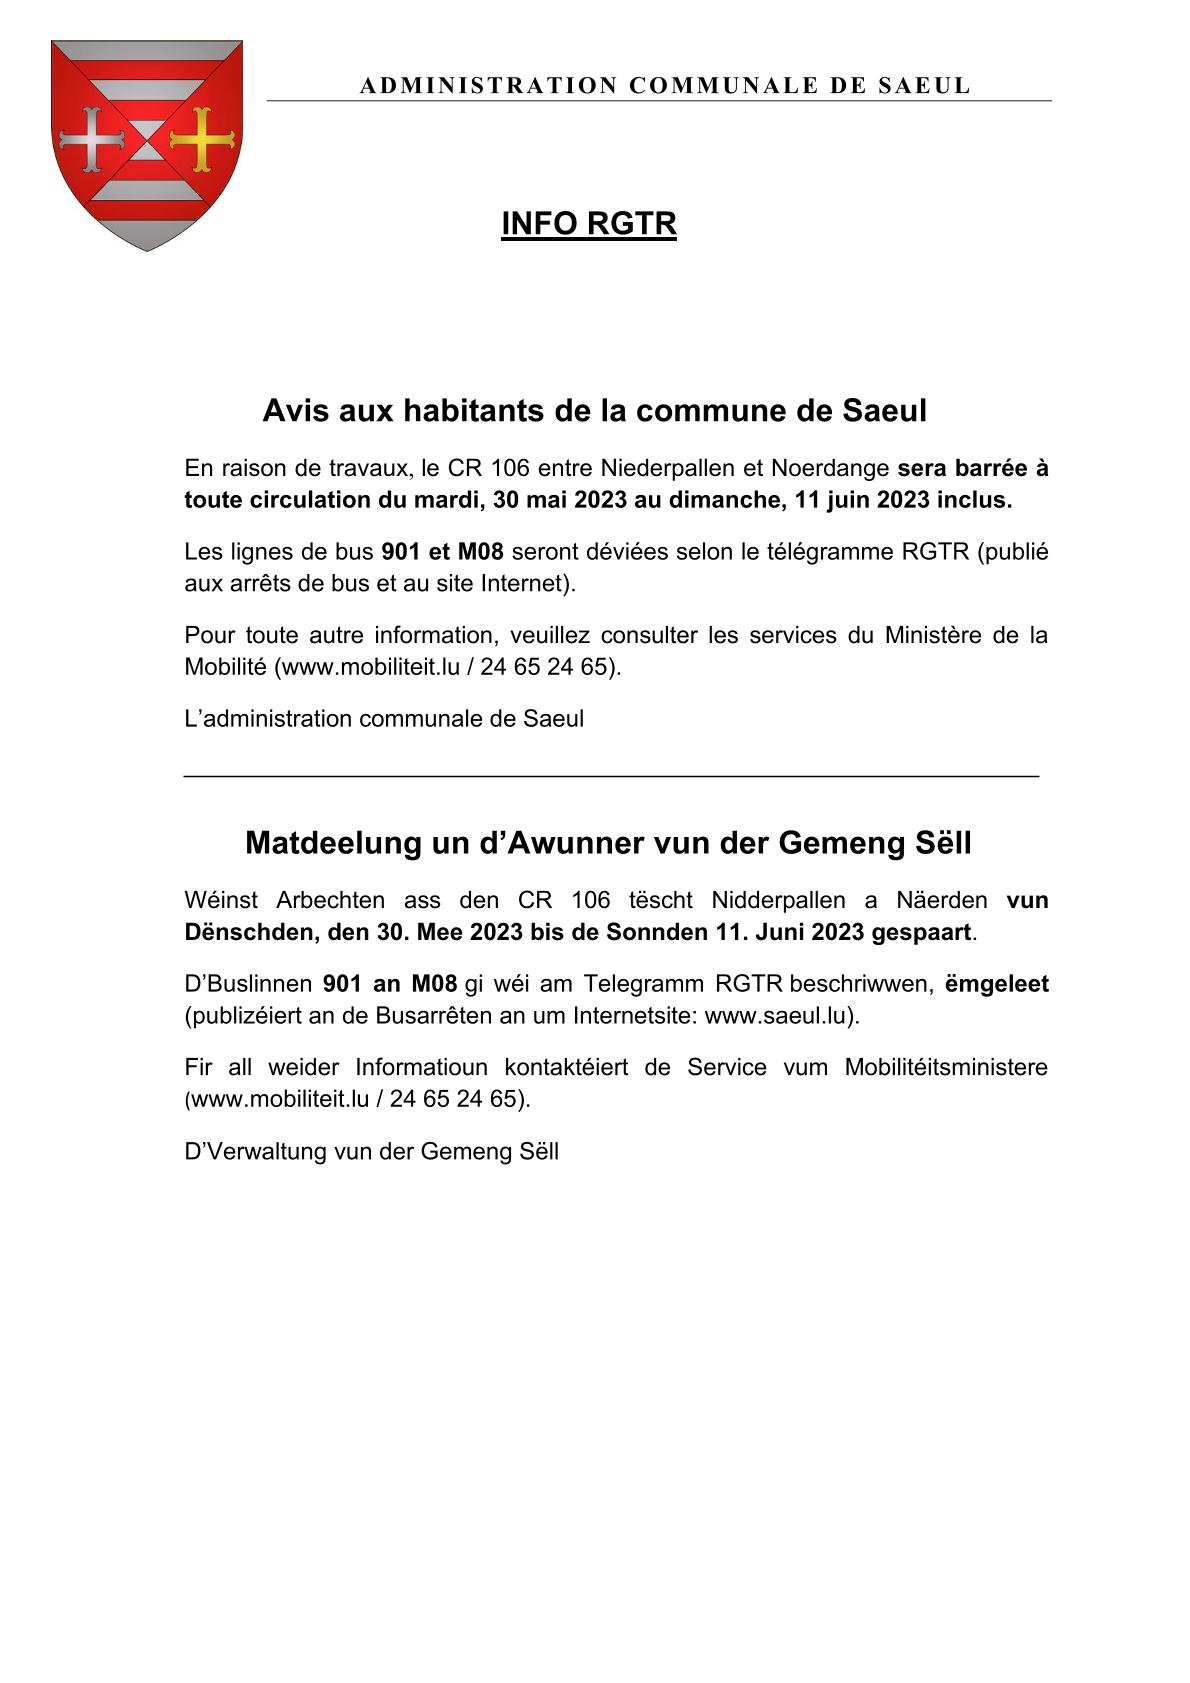 INFO RGTR | Répercussions sur les lignes 901 et M08 en raison des travaux entre Niederpallen et Noerdange du 30.05.2023 au 11.06.2023